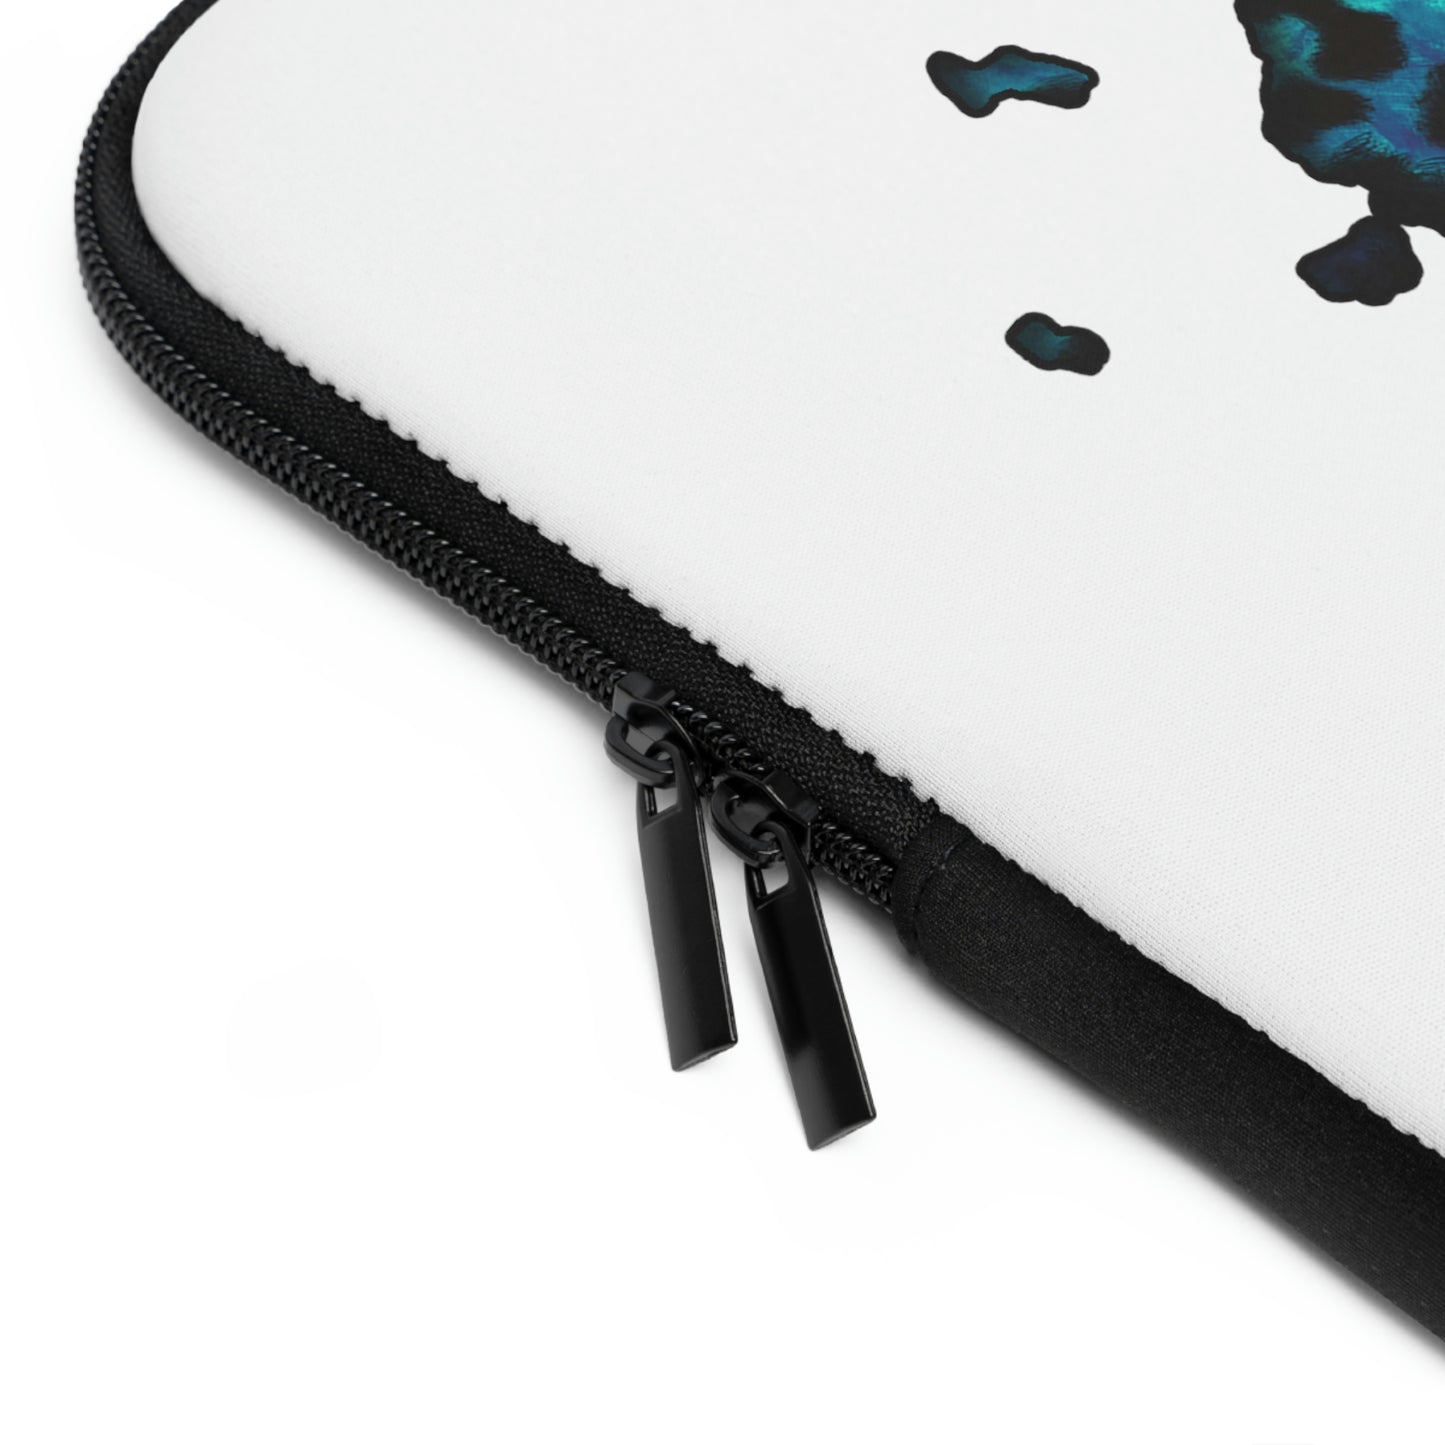 Alaska Blue Leopard Print Laptop Sleeve